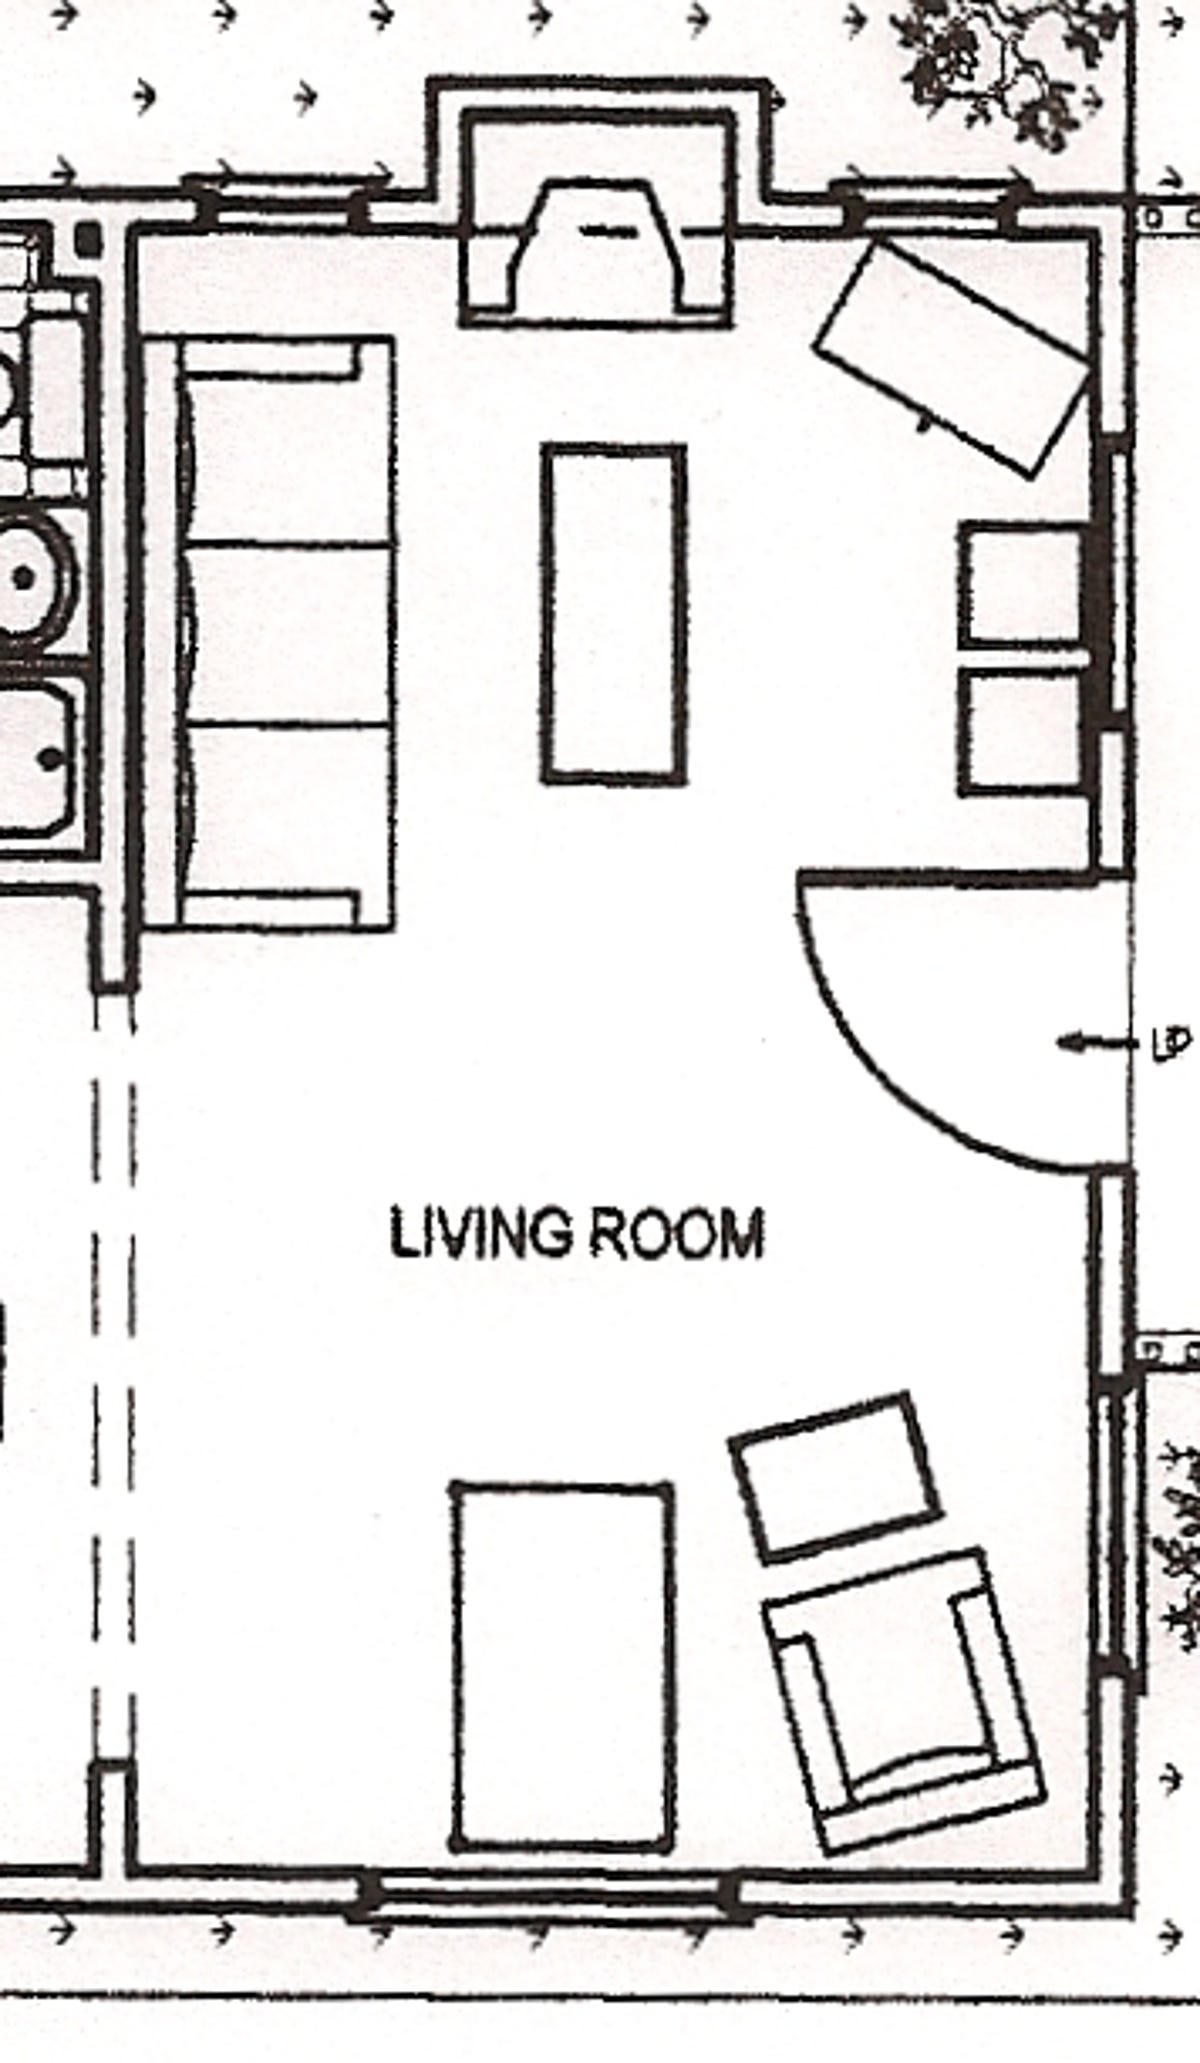 LT_living_room_2.jpg